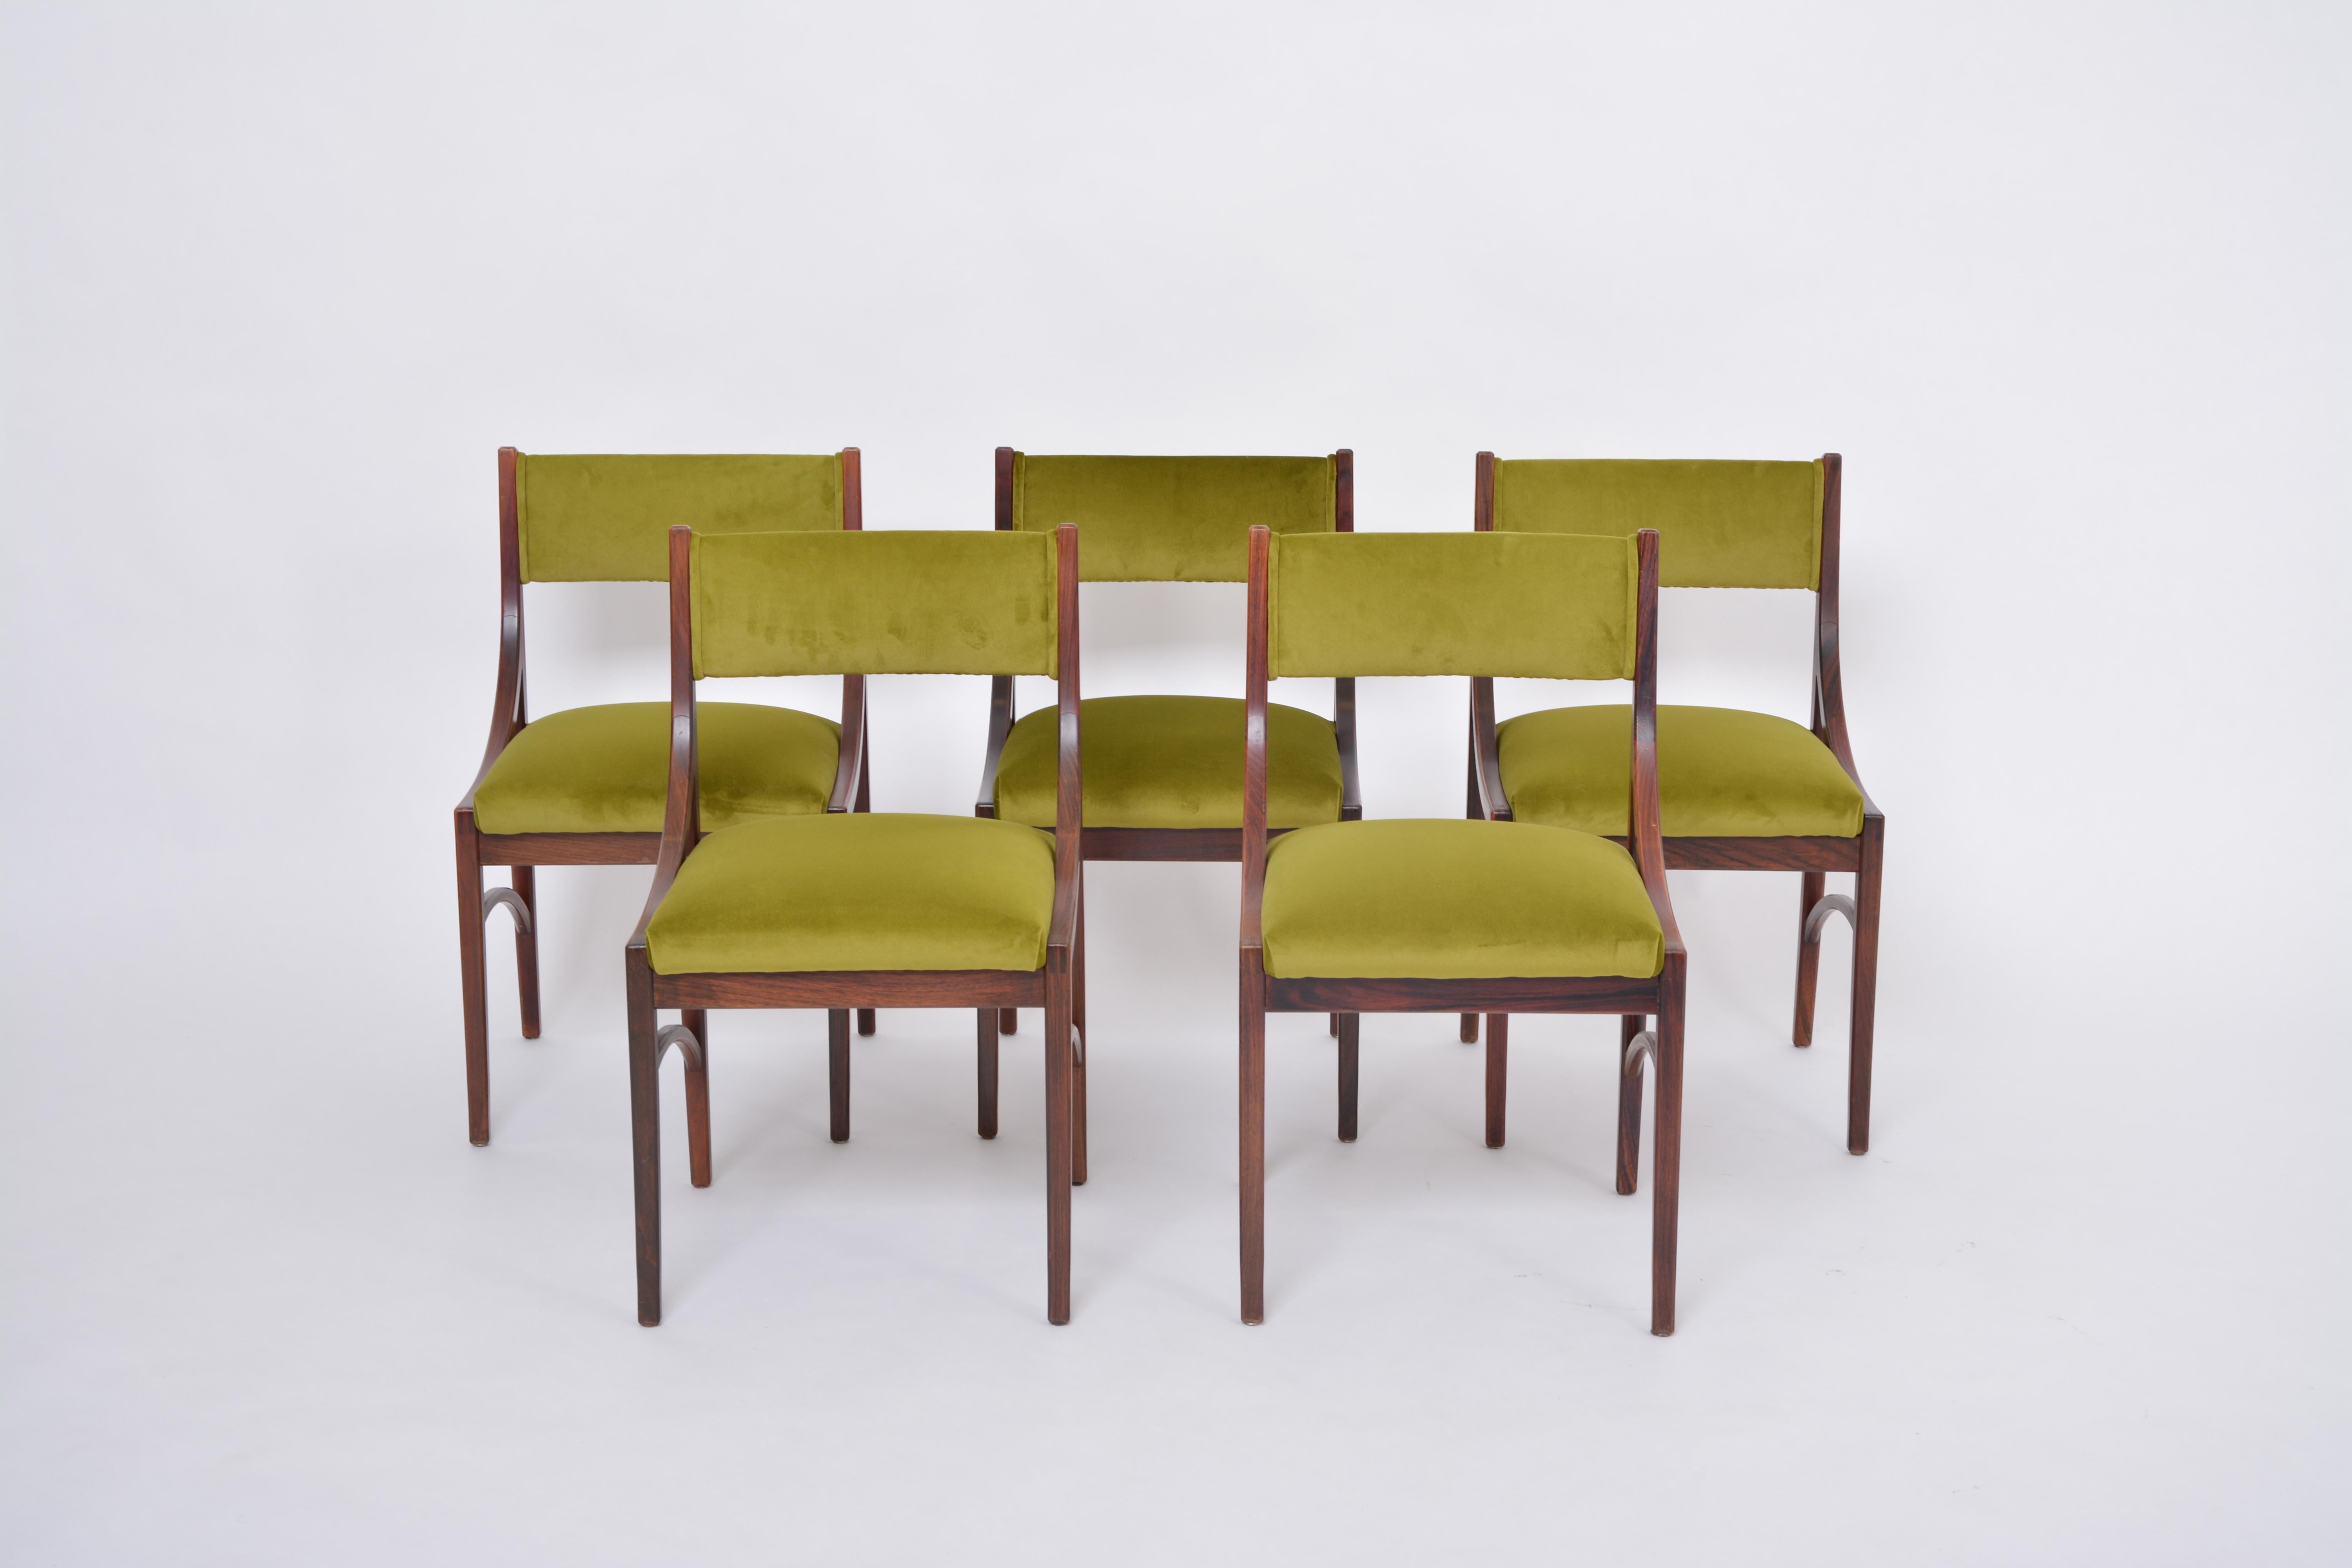 Satz von fünf grünen neu gepolsterten Esszimmerstühlen von Ico Parisi, Mid-Century Modern 
Ico Parisi entwarf 1960 den Stuhl Modell 110. Die hier angebotenen Stühle sind eine Version mit gepolsterter Rückenlehne dieses Modells. Die Stühle wurden von